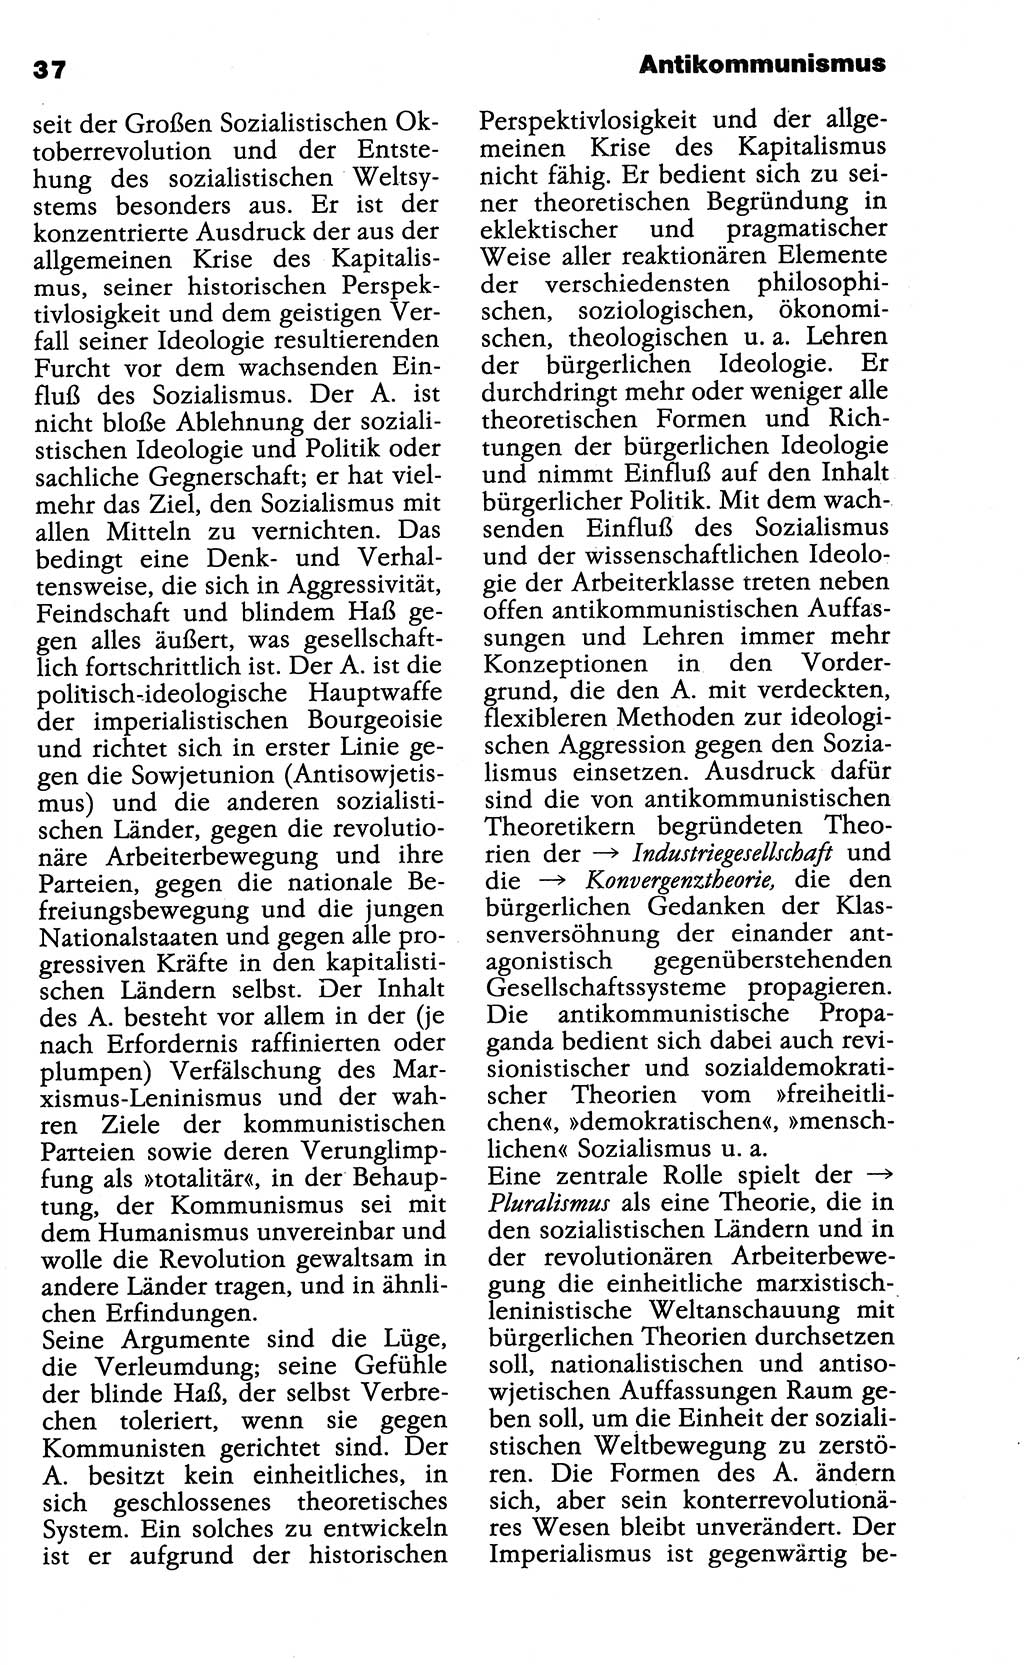 Wörterbuch der marxistisch-leninistischen Philosophie [Deutsche Demokratische Republik (DDR)] 1985, Seite 37 (Wb. ML Phil. DDR 1985, S. 37)